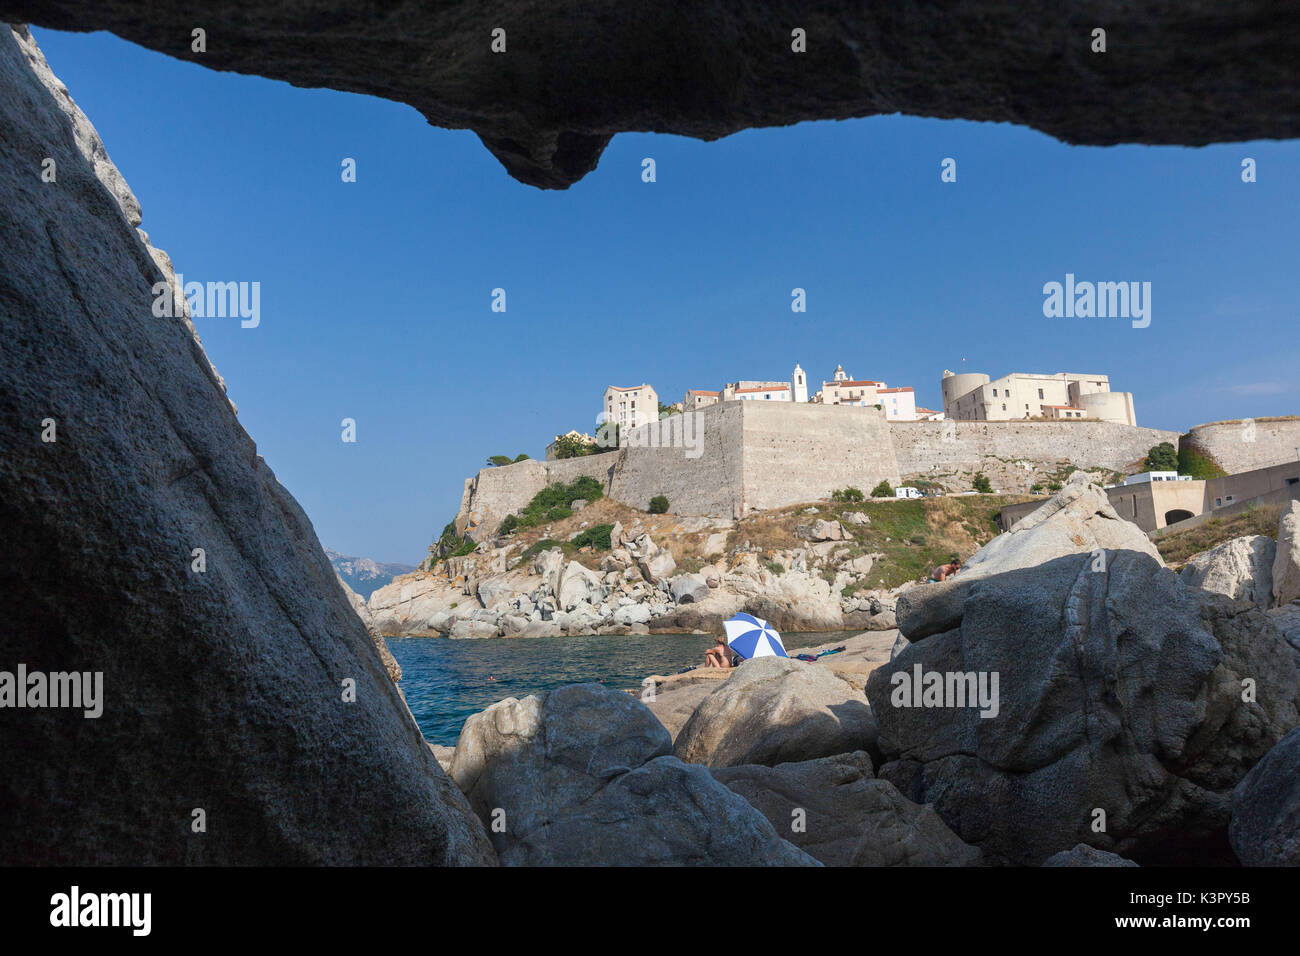 Vue de l'ancienne citadelle fortifiée d'une grotte marine Calvi Balagne Corse France Europe du nord-ouest Banque D'Images